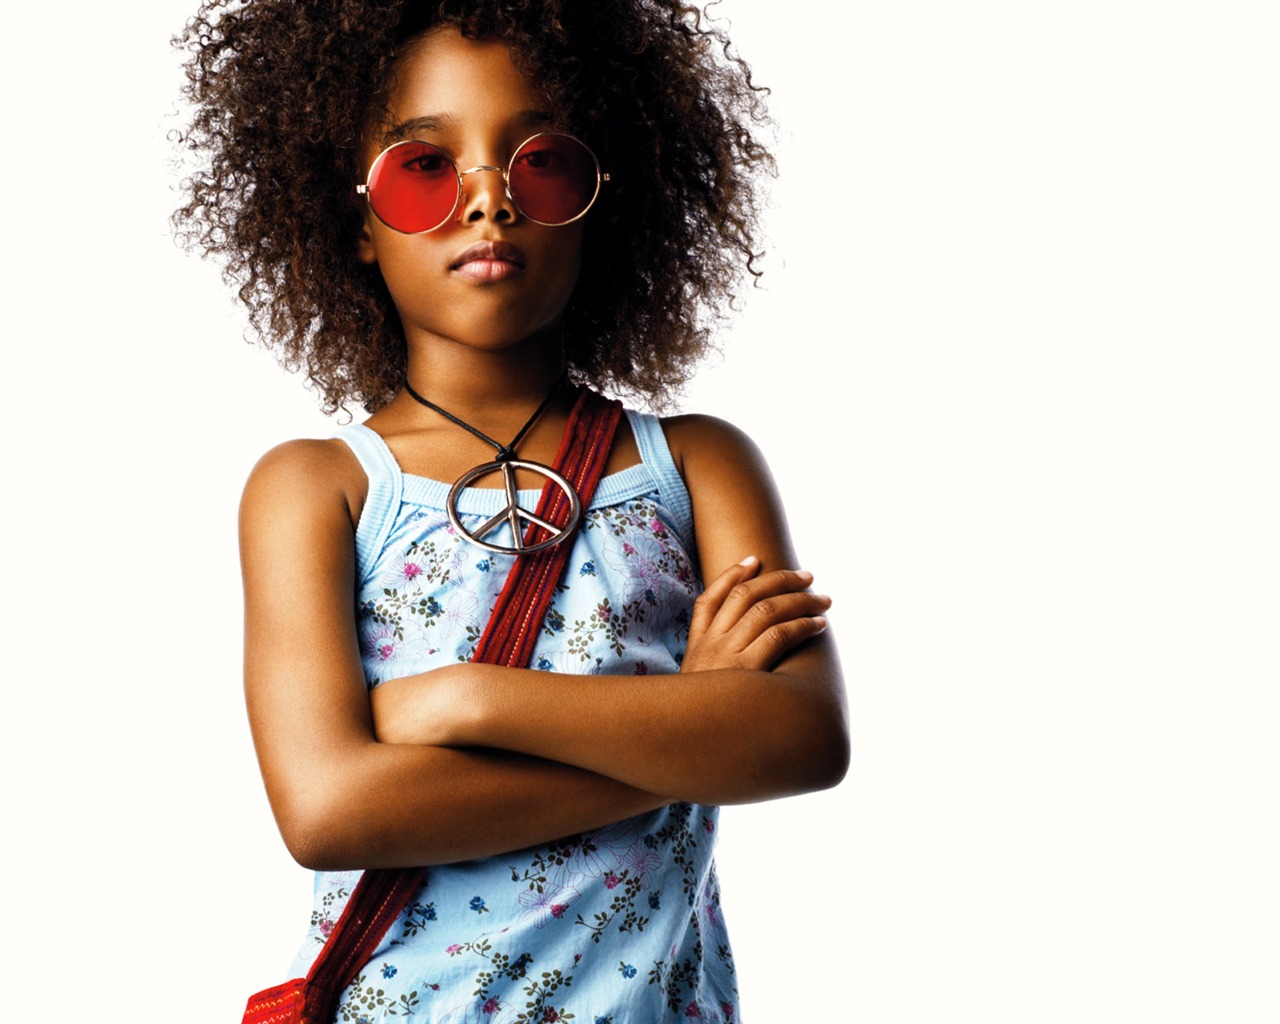 Colorful Children's Fashion Wallpaper (1) #3 - 1280x1024